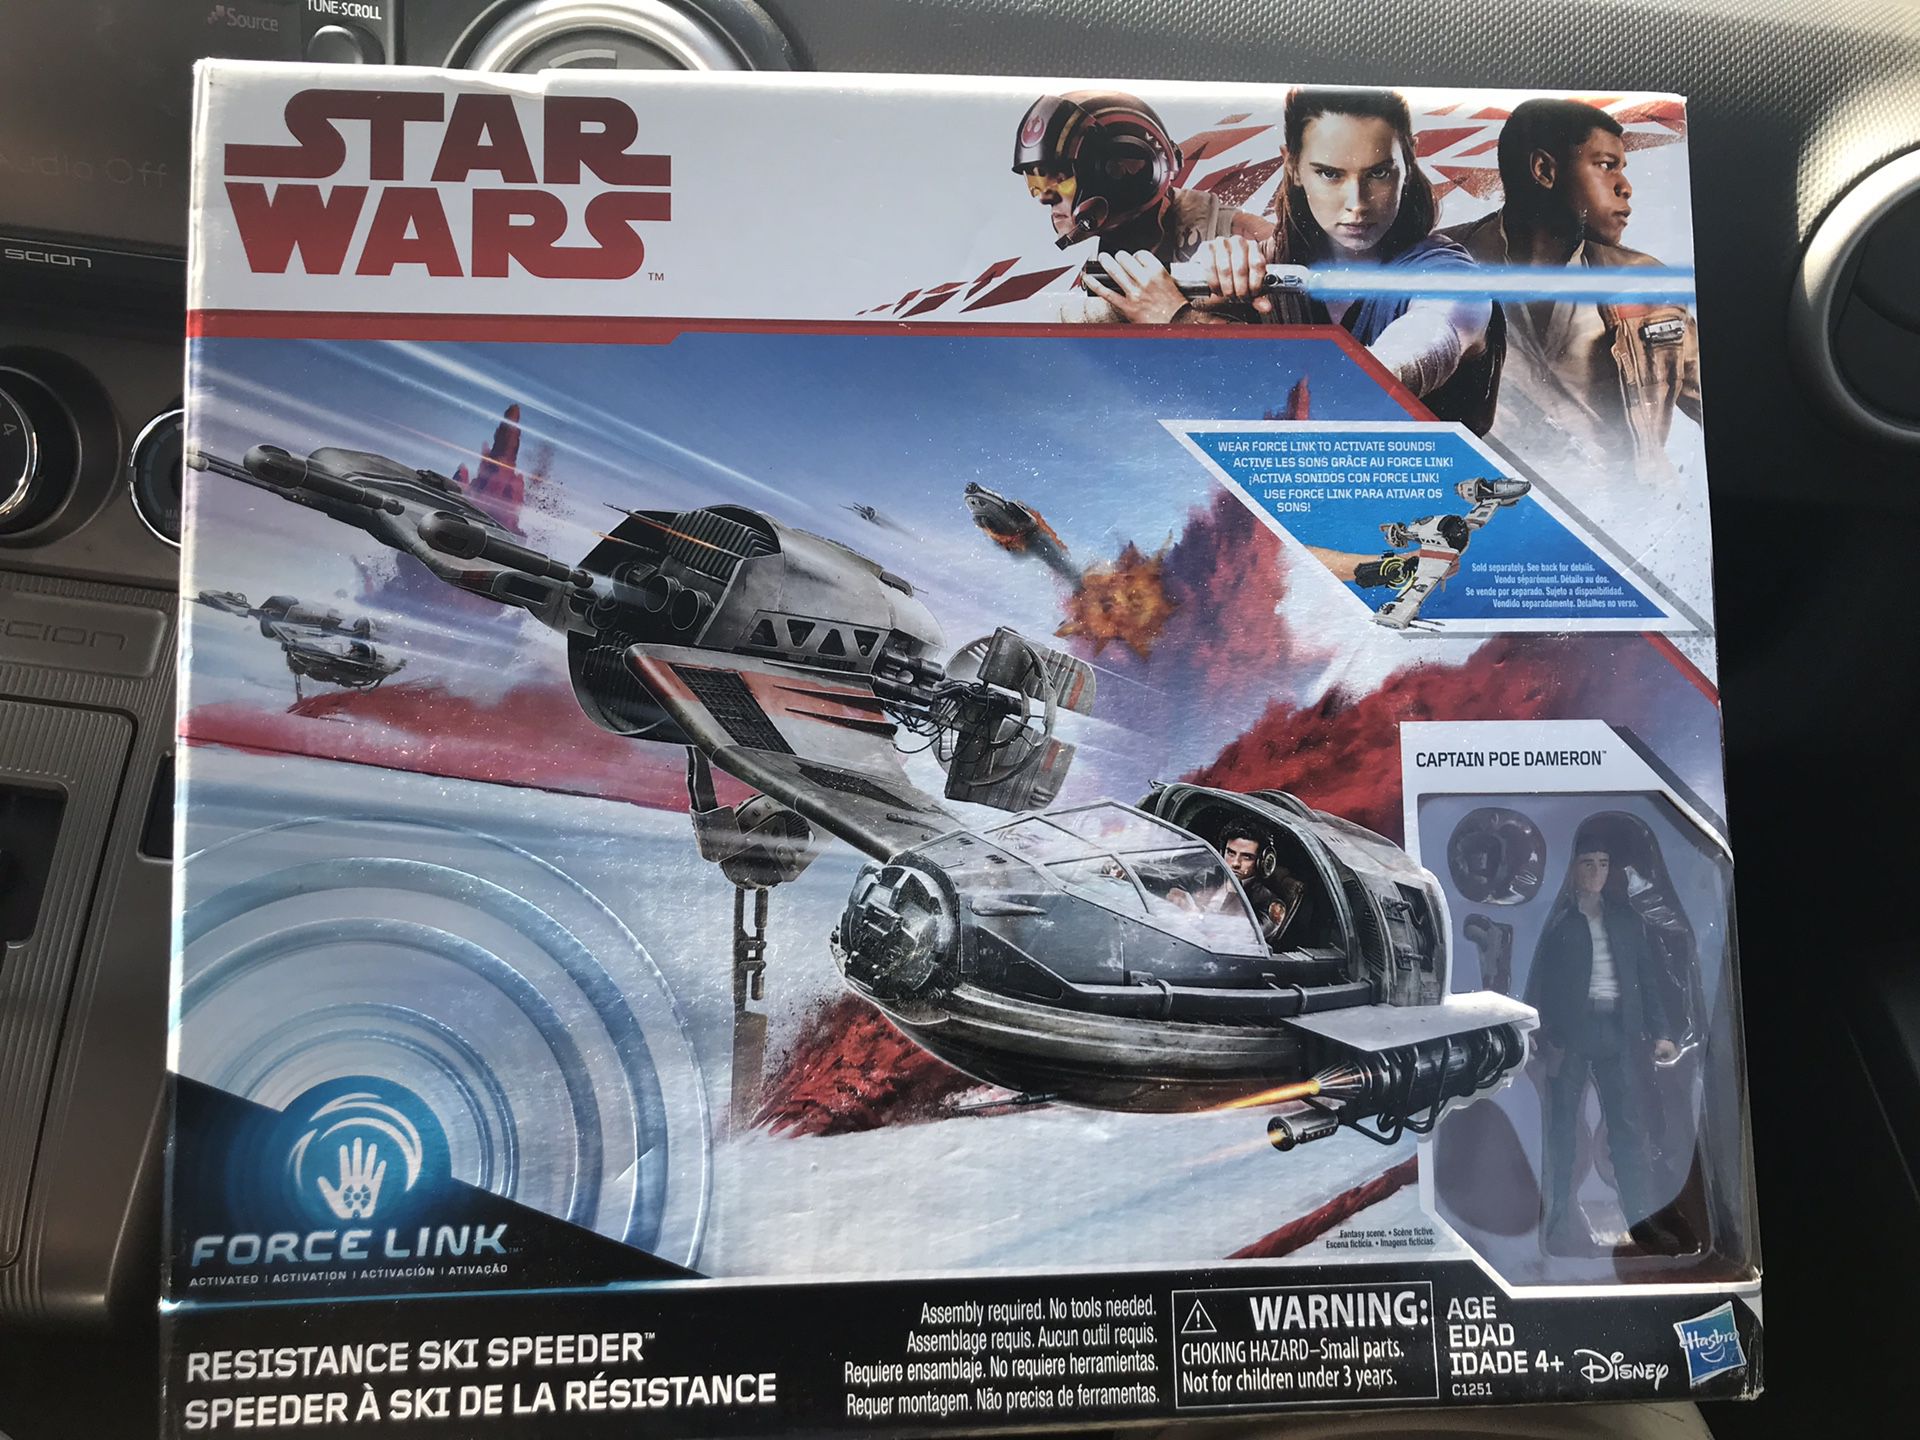 New Starwars Resistance ski speeder toy